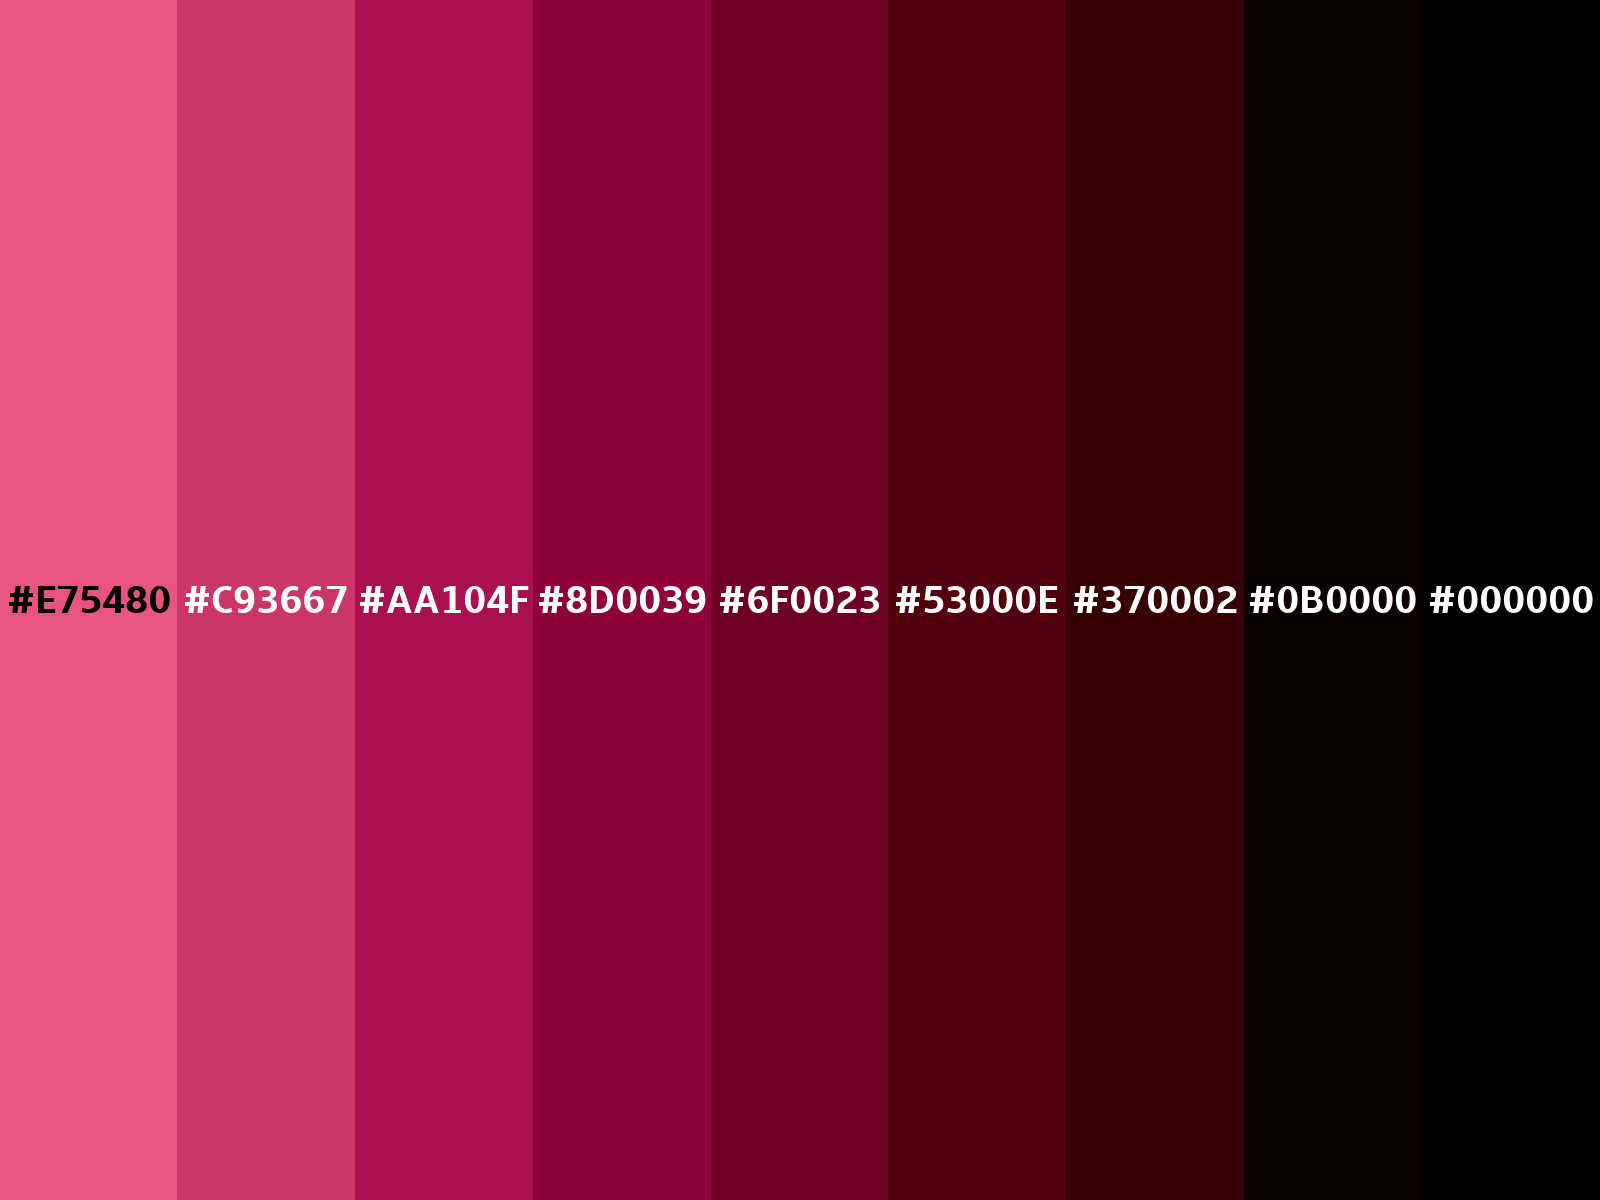 Dark pink color (Hex E75480)